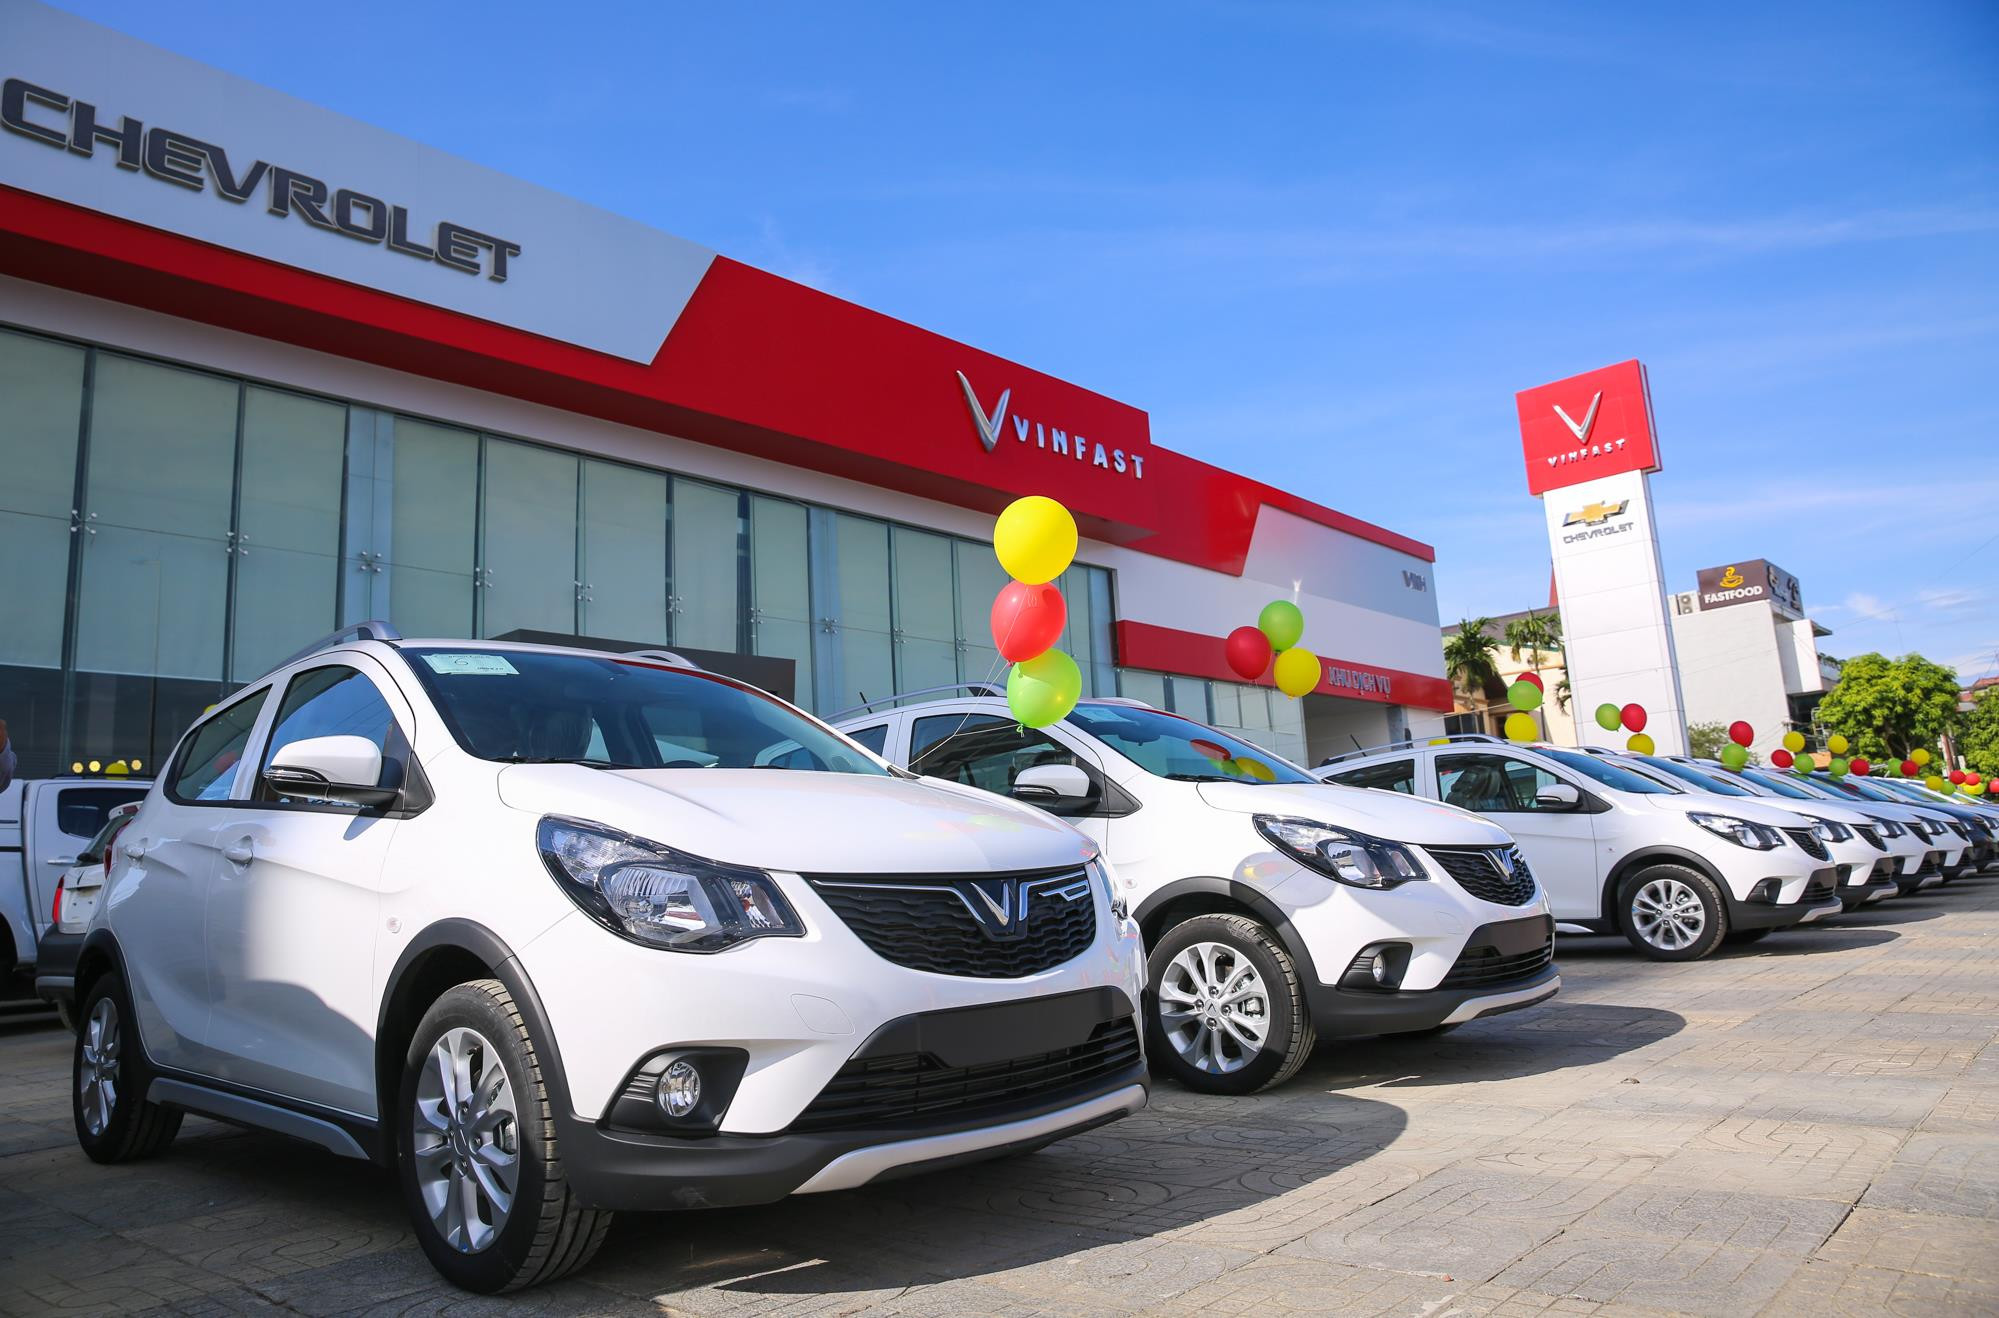 Những chiếc xe VinFast Fandil “cập bến” Đại lý VinFast - Chevrolet Vinh; chuẩn bị bàn giao khách hàng tại Nghệ An, Hà Tĩnh. Ảnh: Đức Anh